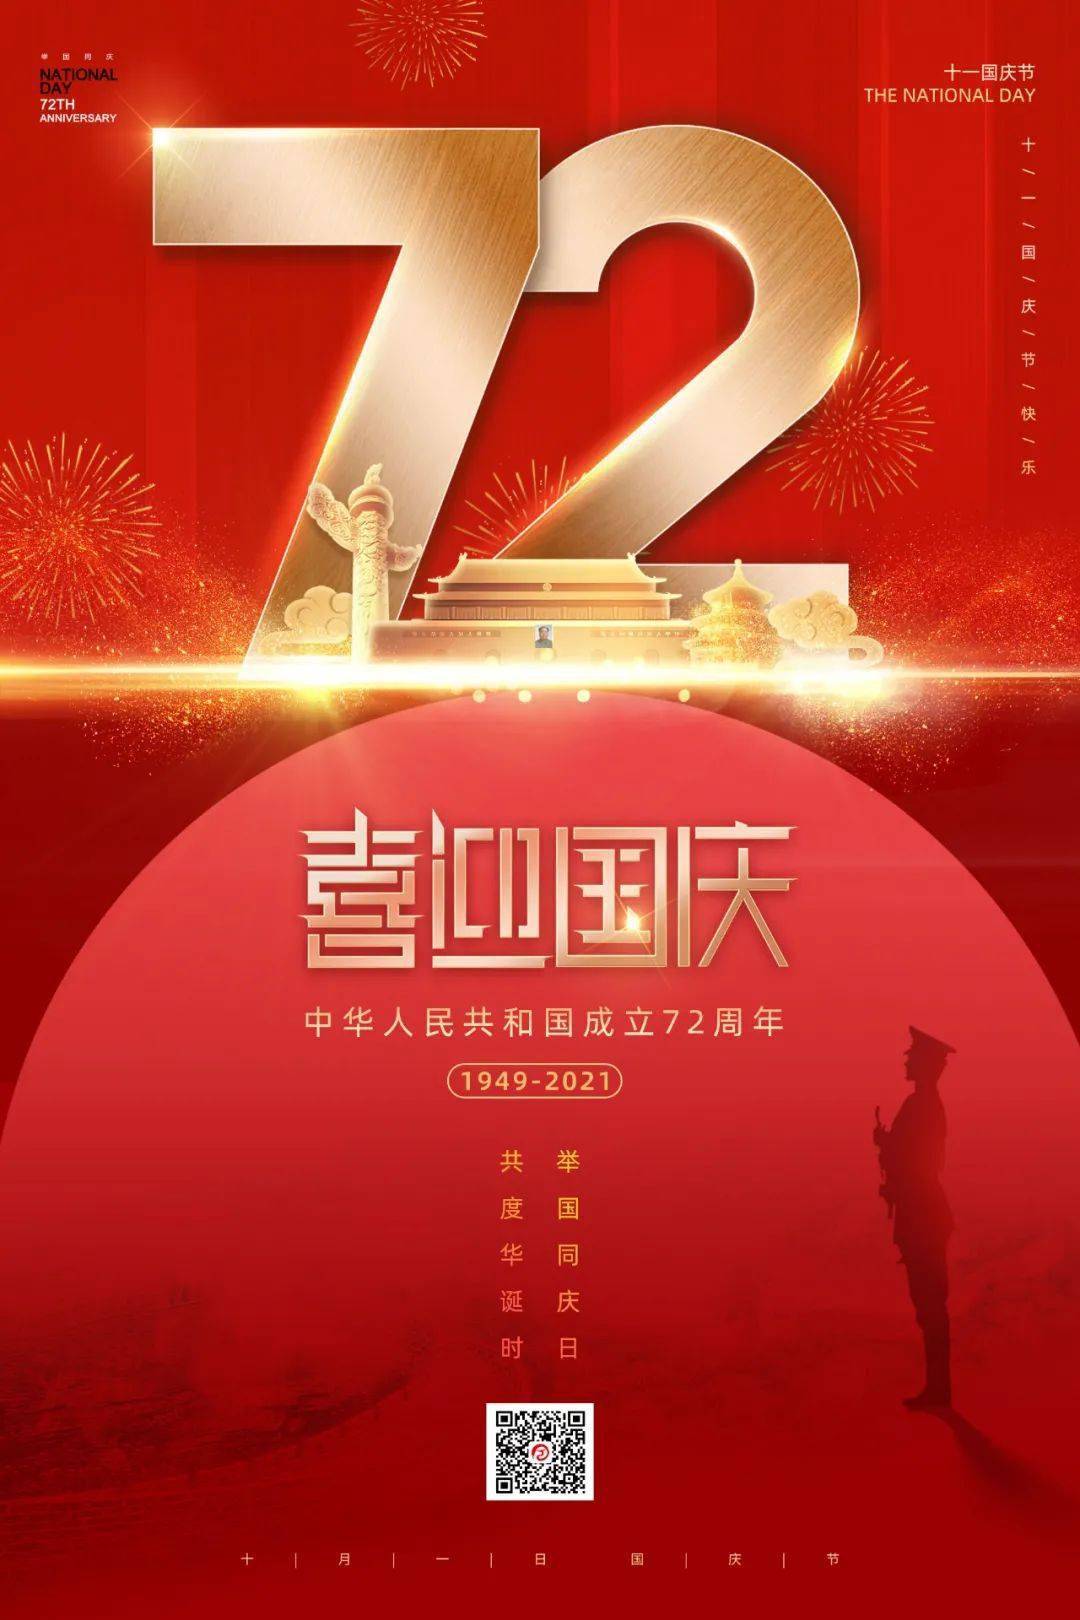 【全天候】喜迎国庆,爱我中华│热烈庆祝中华人民共和国成立72周年